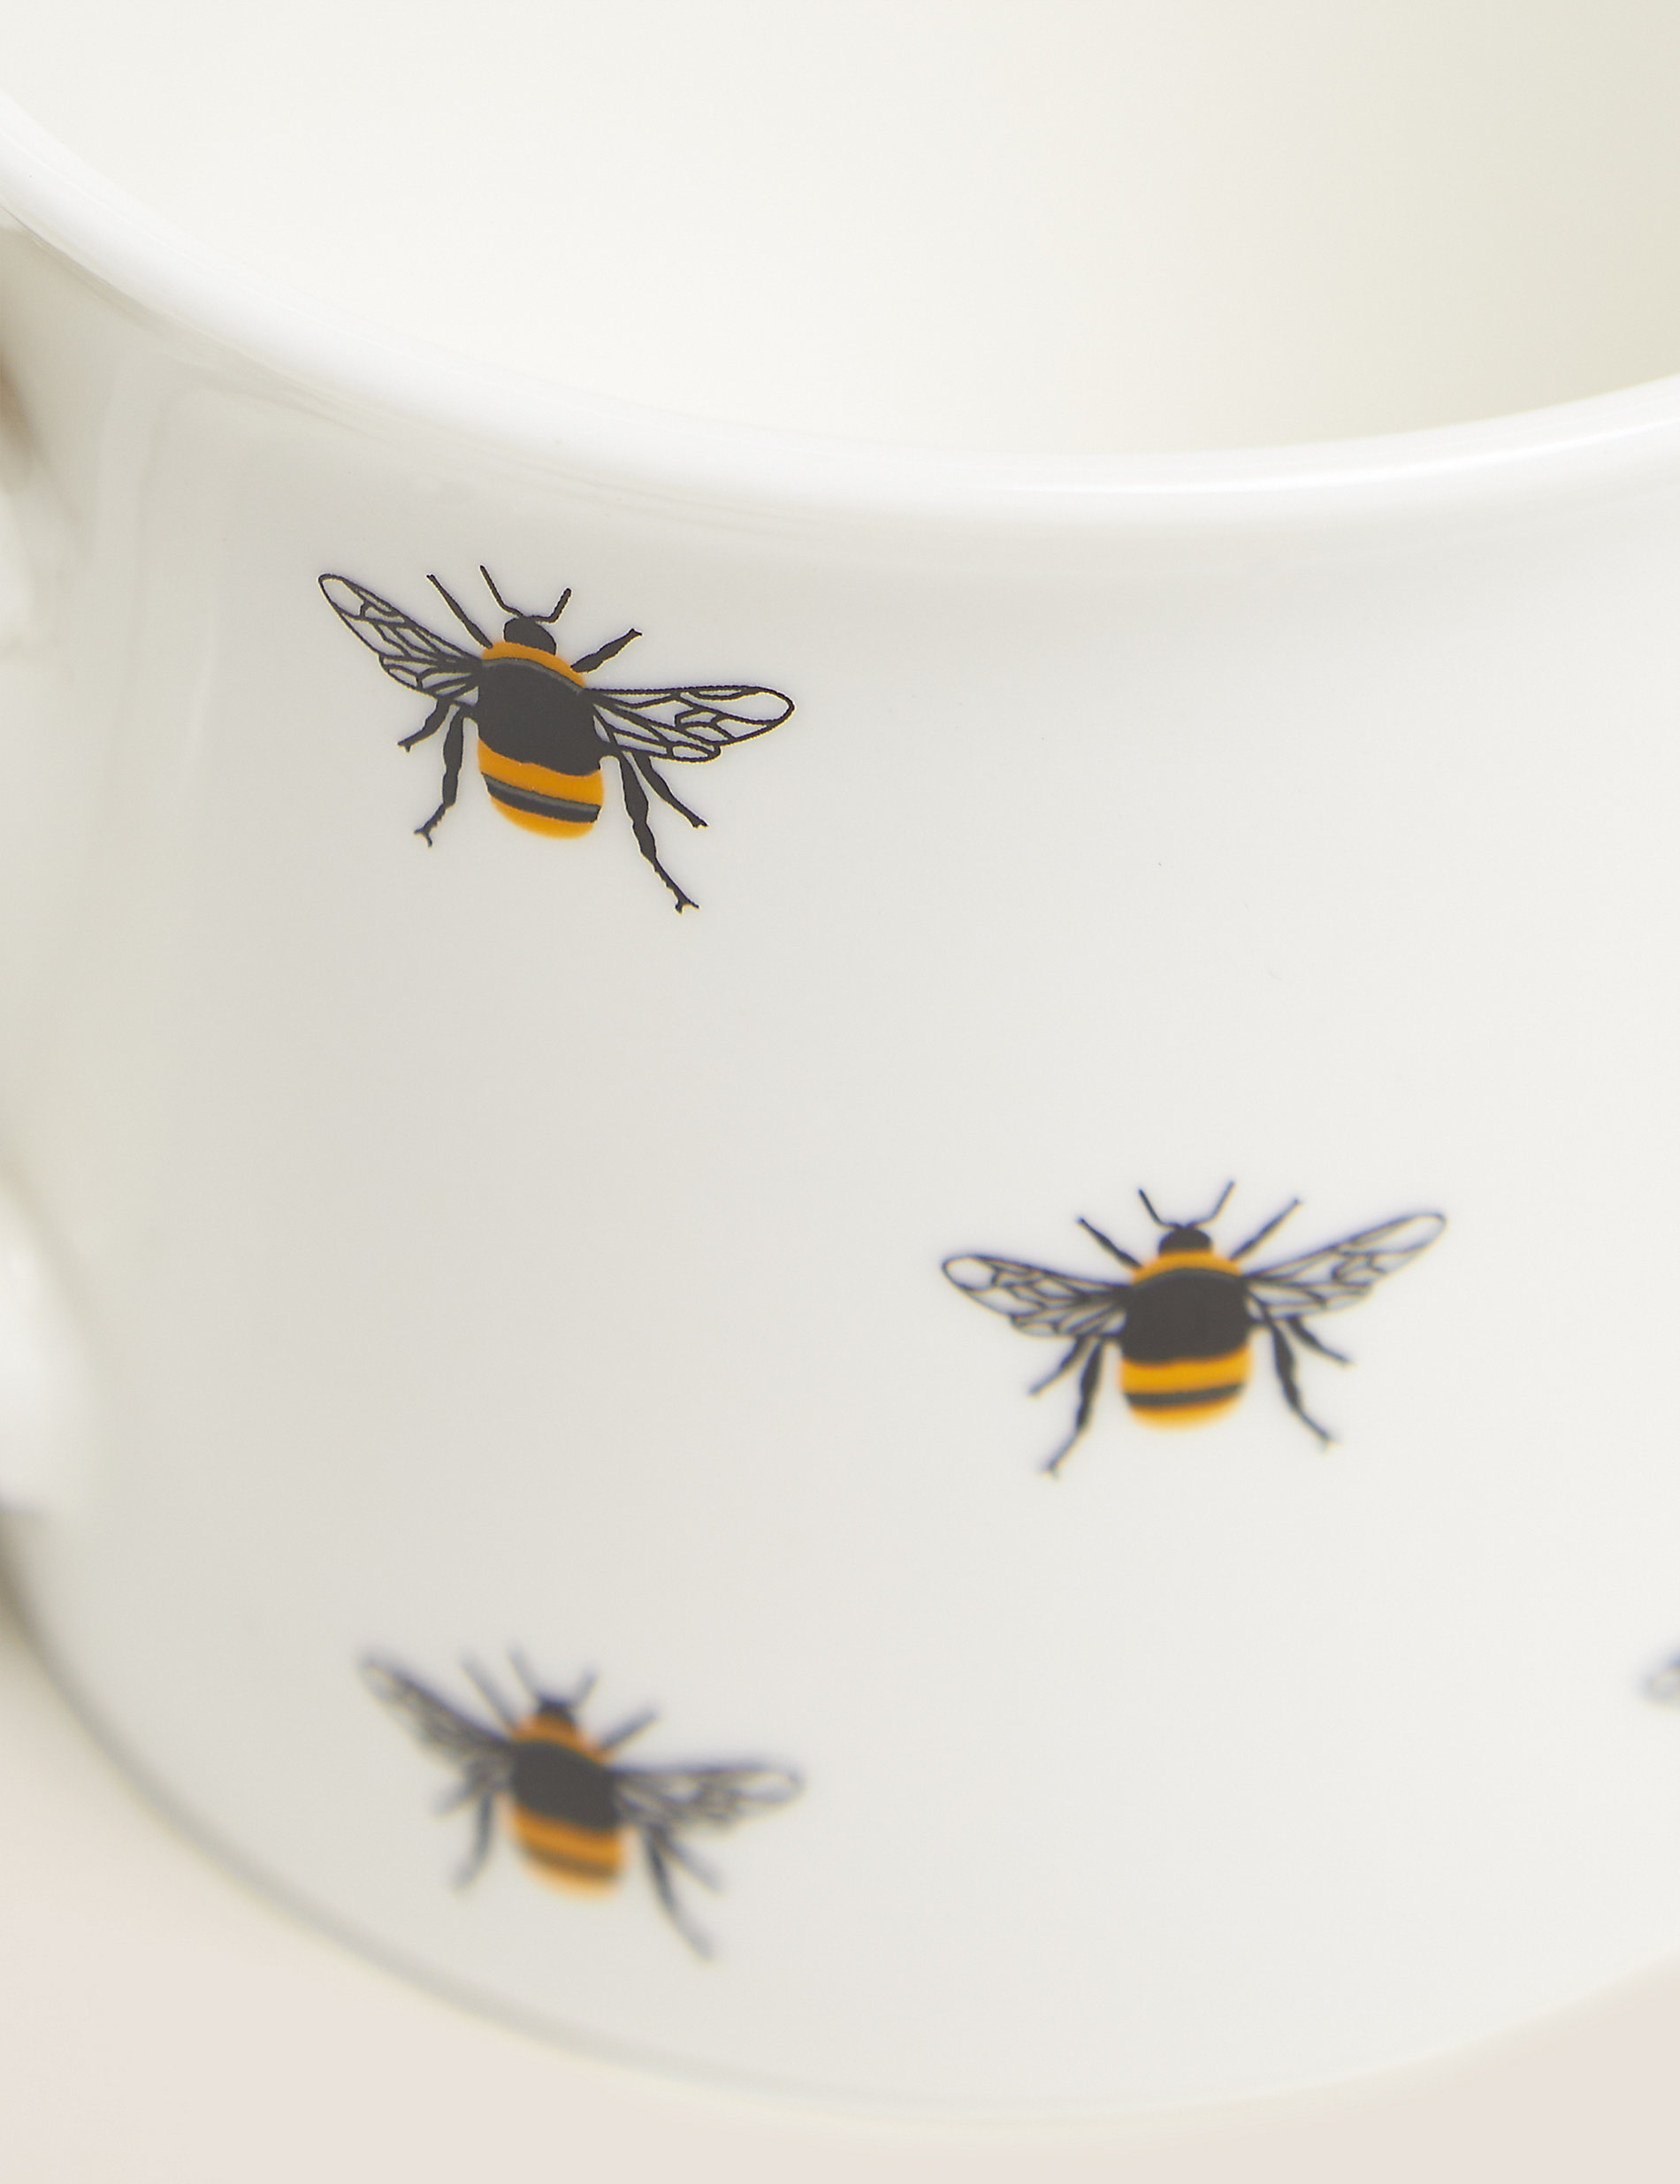 Set of 4 Bee Mugs